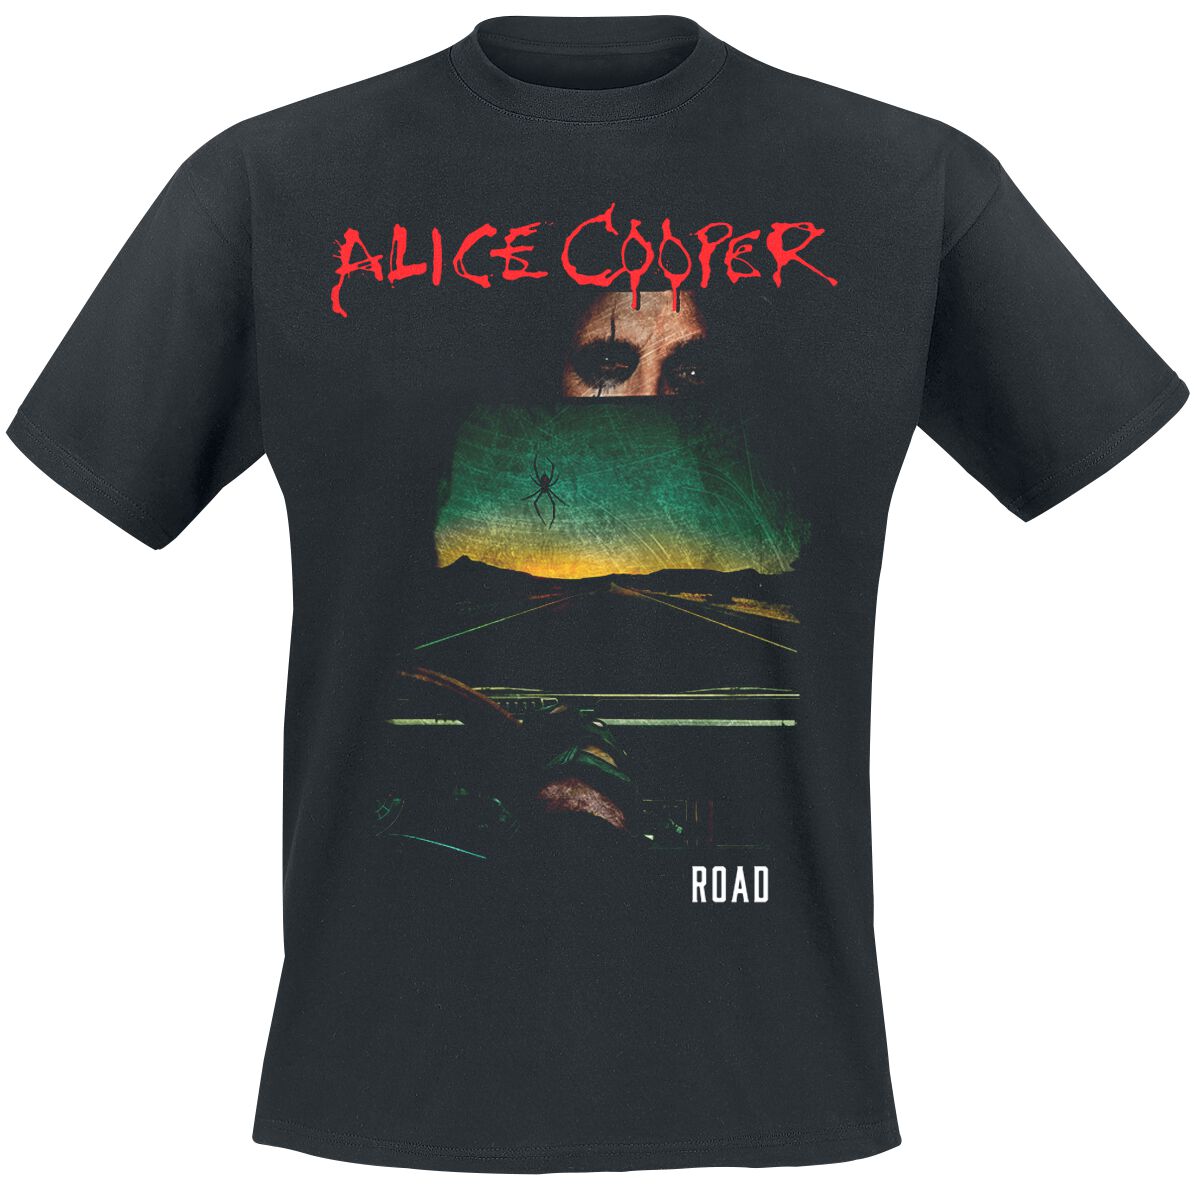 Alice Cooper T-Shirt - Road Cover Tracklist - S bis XXL - für Männer - Größe S - schwarz  - Lizenziertes Merchandise!